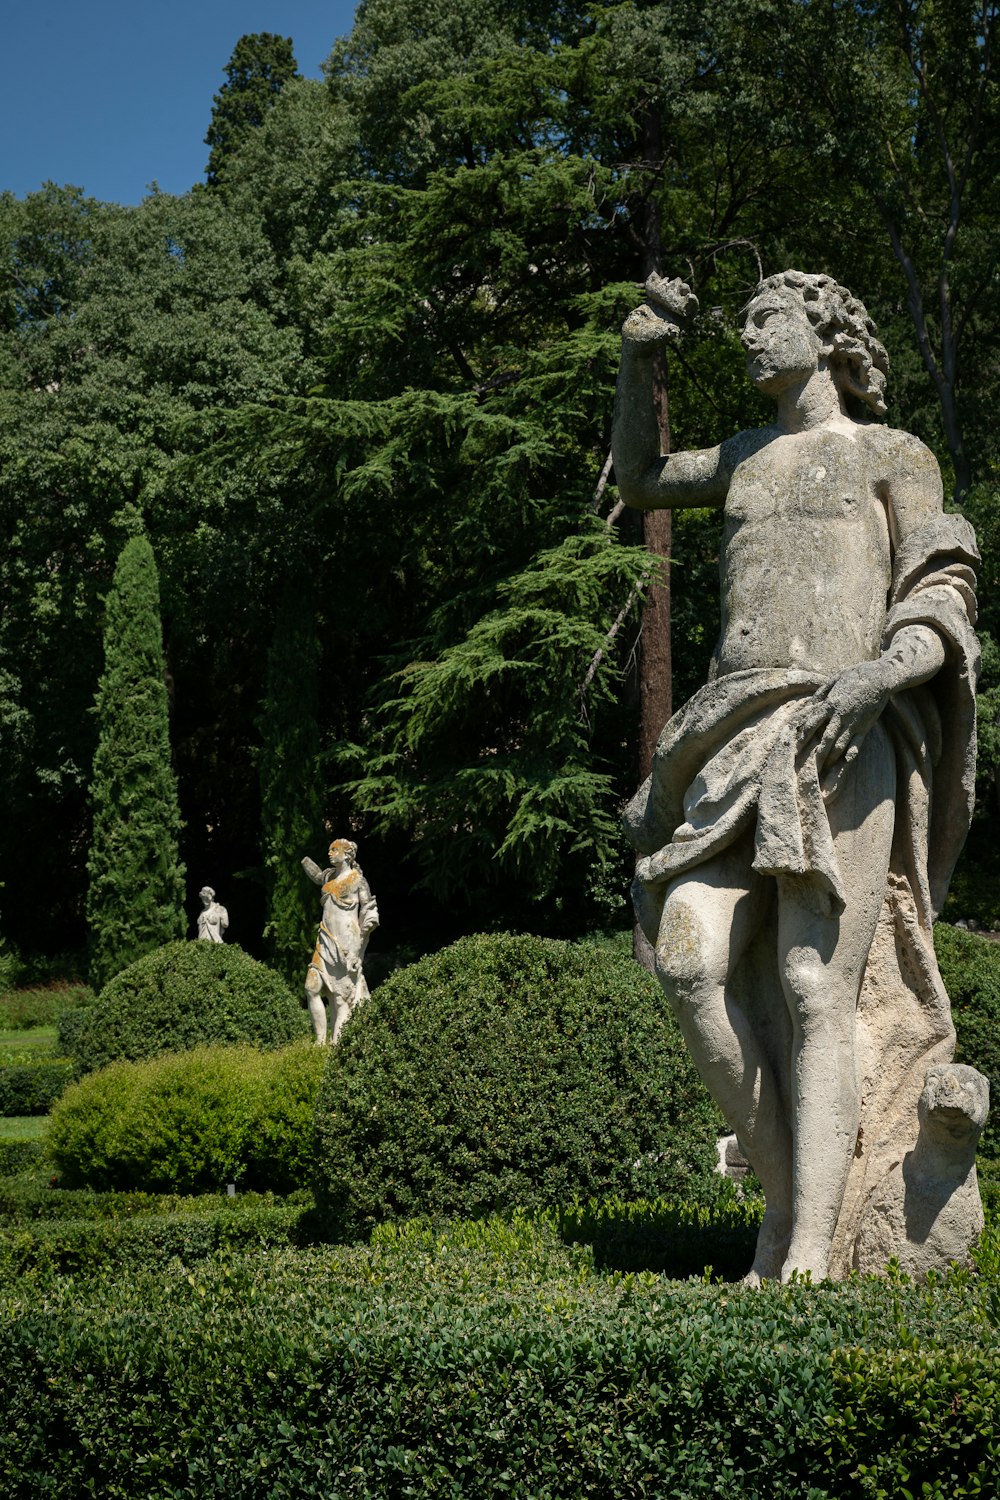 a statue of a man holding a bird in a garden